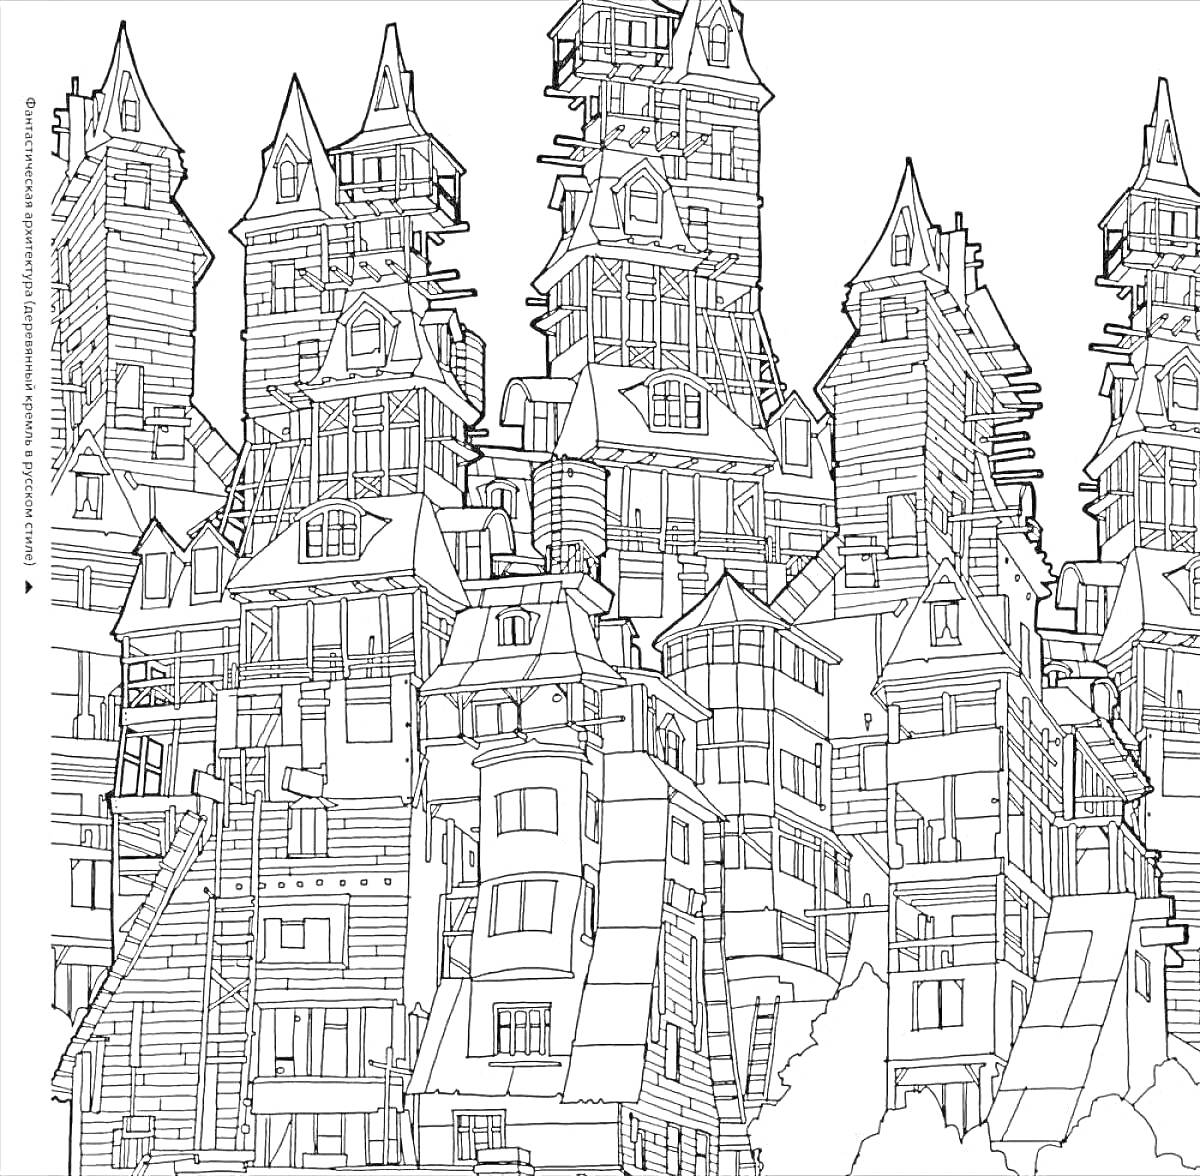 Раскраска Город со множеством домов в античном стиле, несколько этажей, высокие шпили и башни, сложная архитектура, окна, крыши